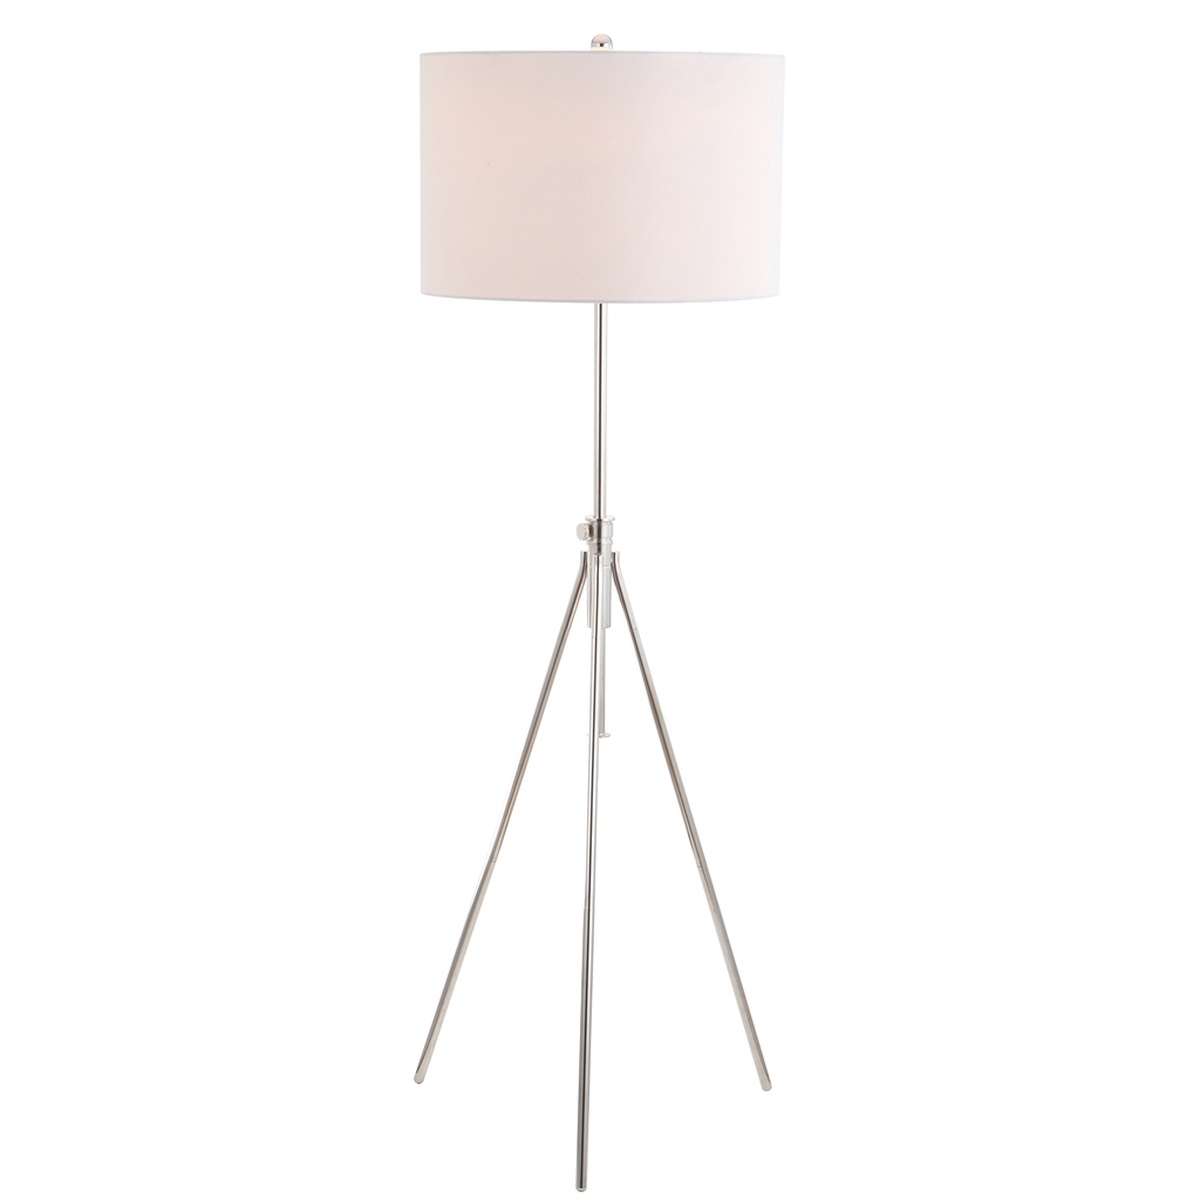 Cipriana Floor Lamp - Nickel - Arlo Home - Image 1